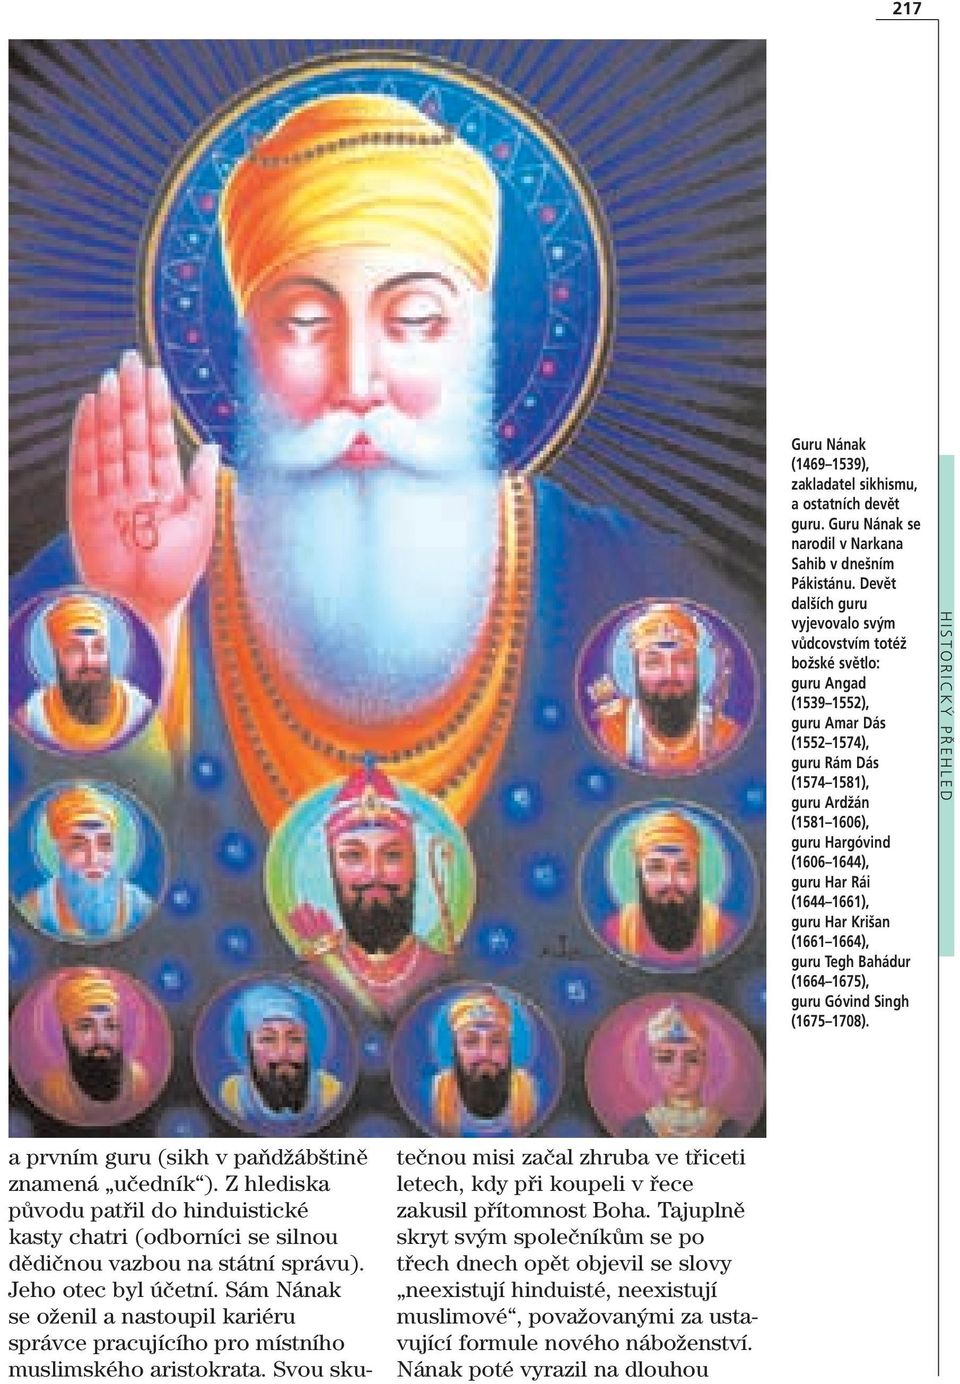 guru Har Rái (1644 1661), guru Har Krišan (1661 1664), guru Tegh Bahádur (1664 1675), guru Góvind Singh (1675 1708). HISTORICKÝ PŘEHLED a prvním guru (sikh v paňdžábštině znamená učedník ).